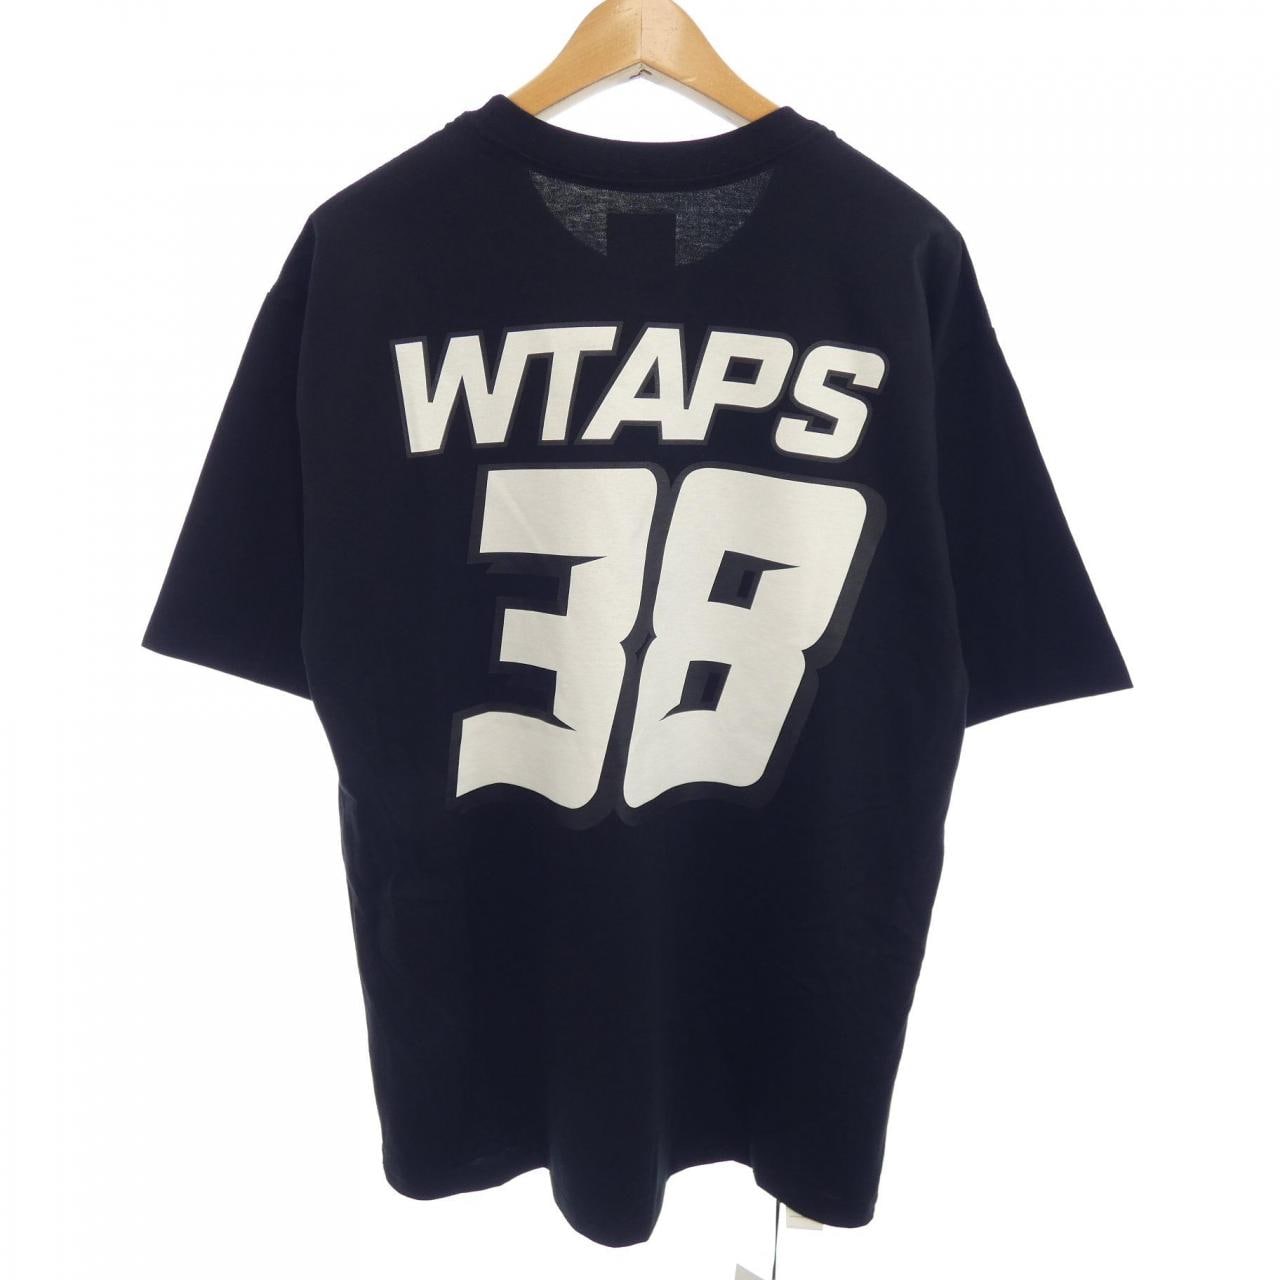 ダブルタップス WTAPS Tシャツ